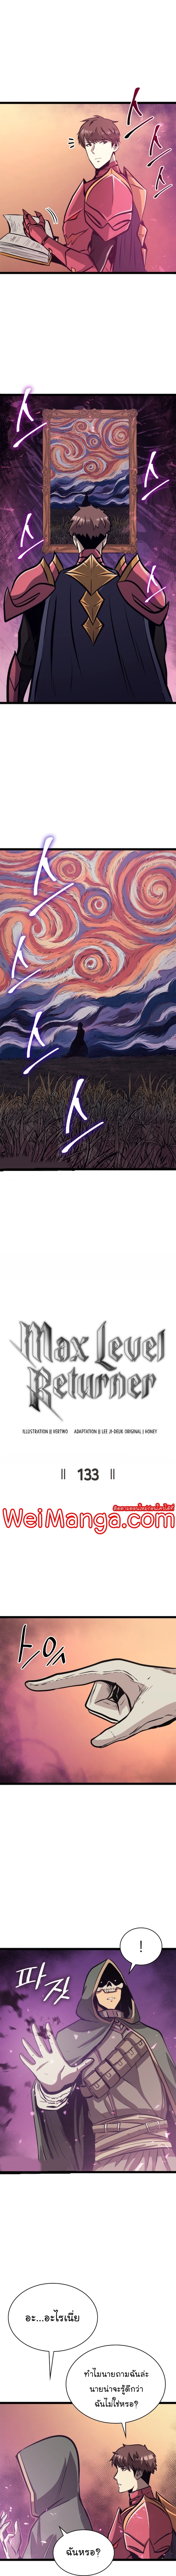 อ่านการ์ตูน Max Level Returner 133 ภาพที่ 2